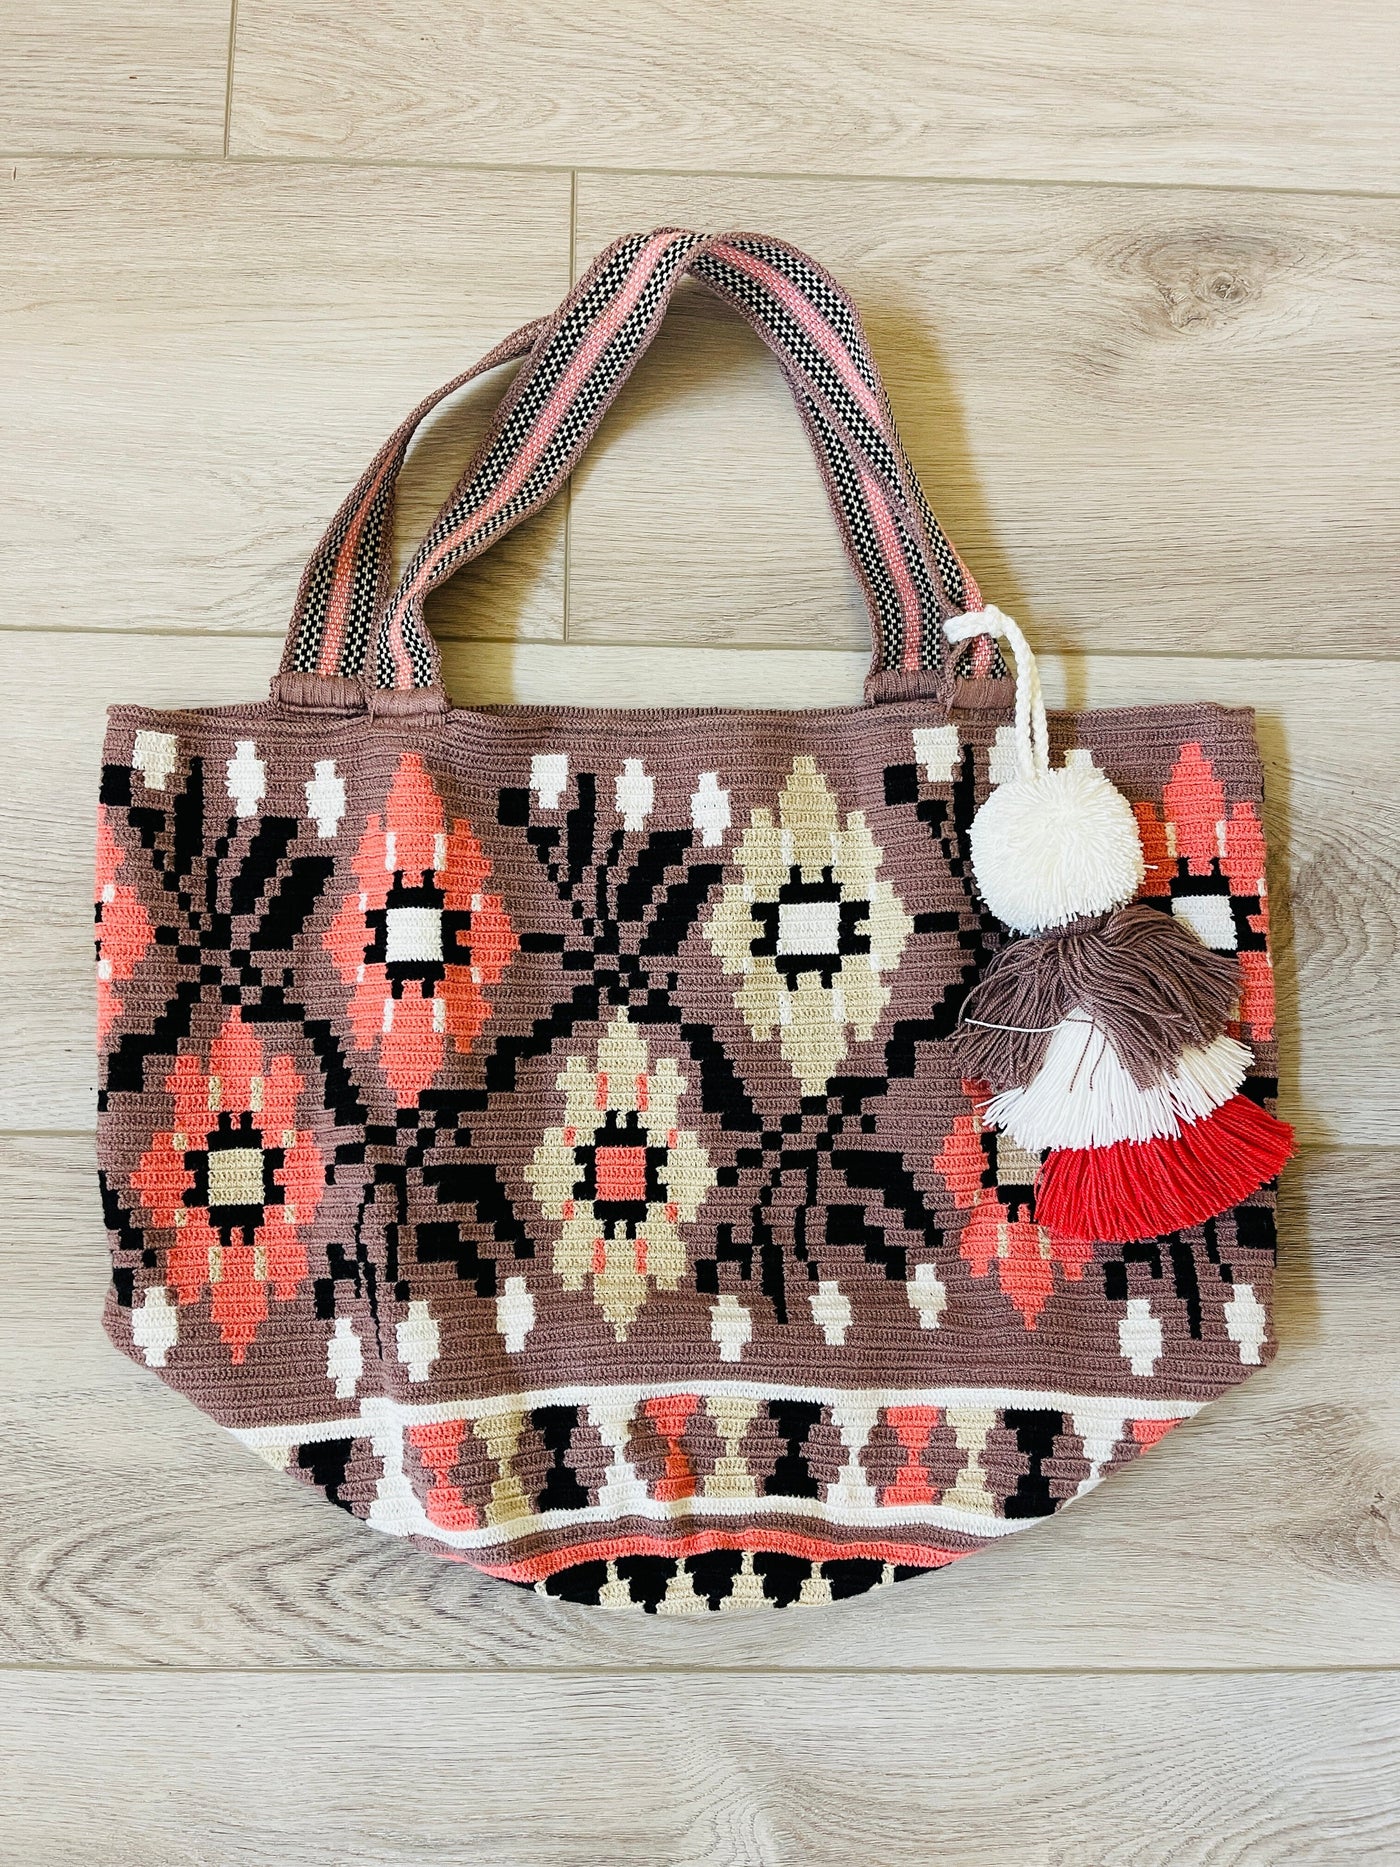 Spring & Summer Maxi Tote Beach Bags | Soft crochet XL BEACH BAG - CROCHET TOTE BAG 